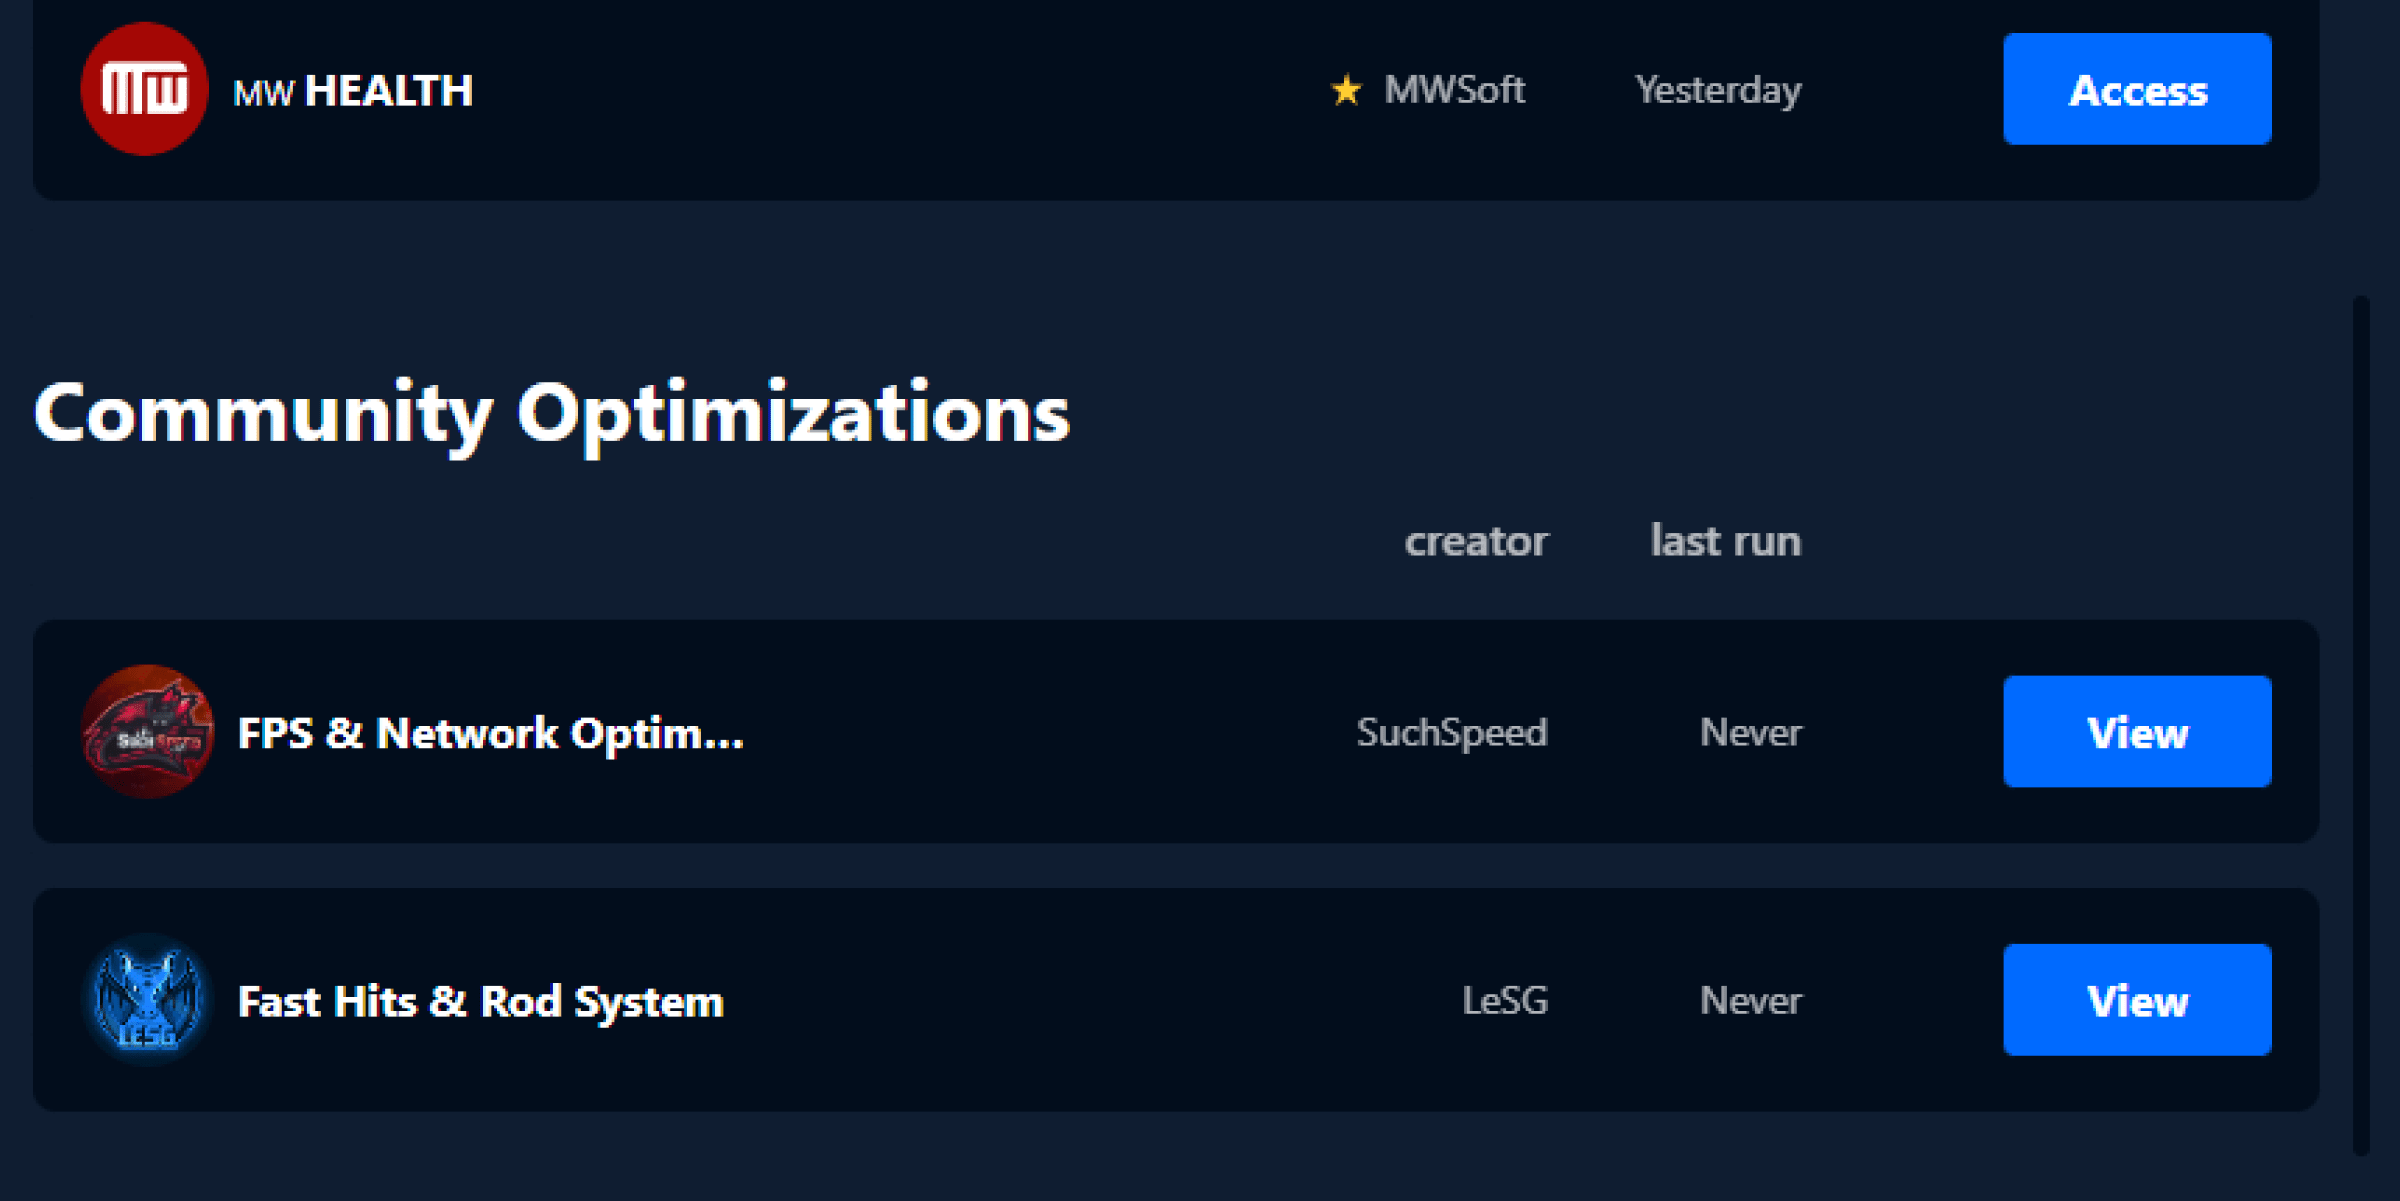 MWSoft Community Optimizations Section